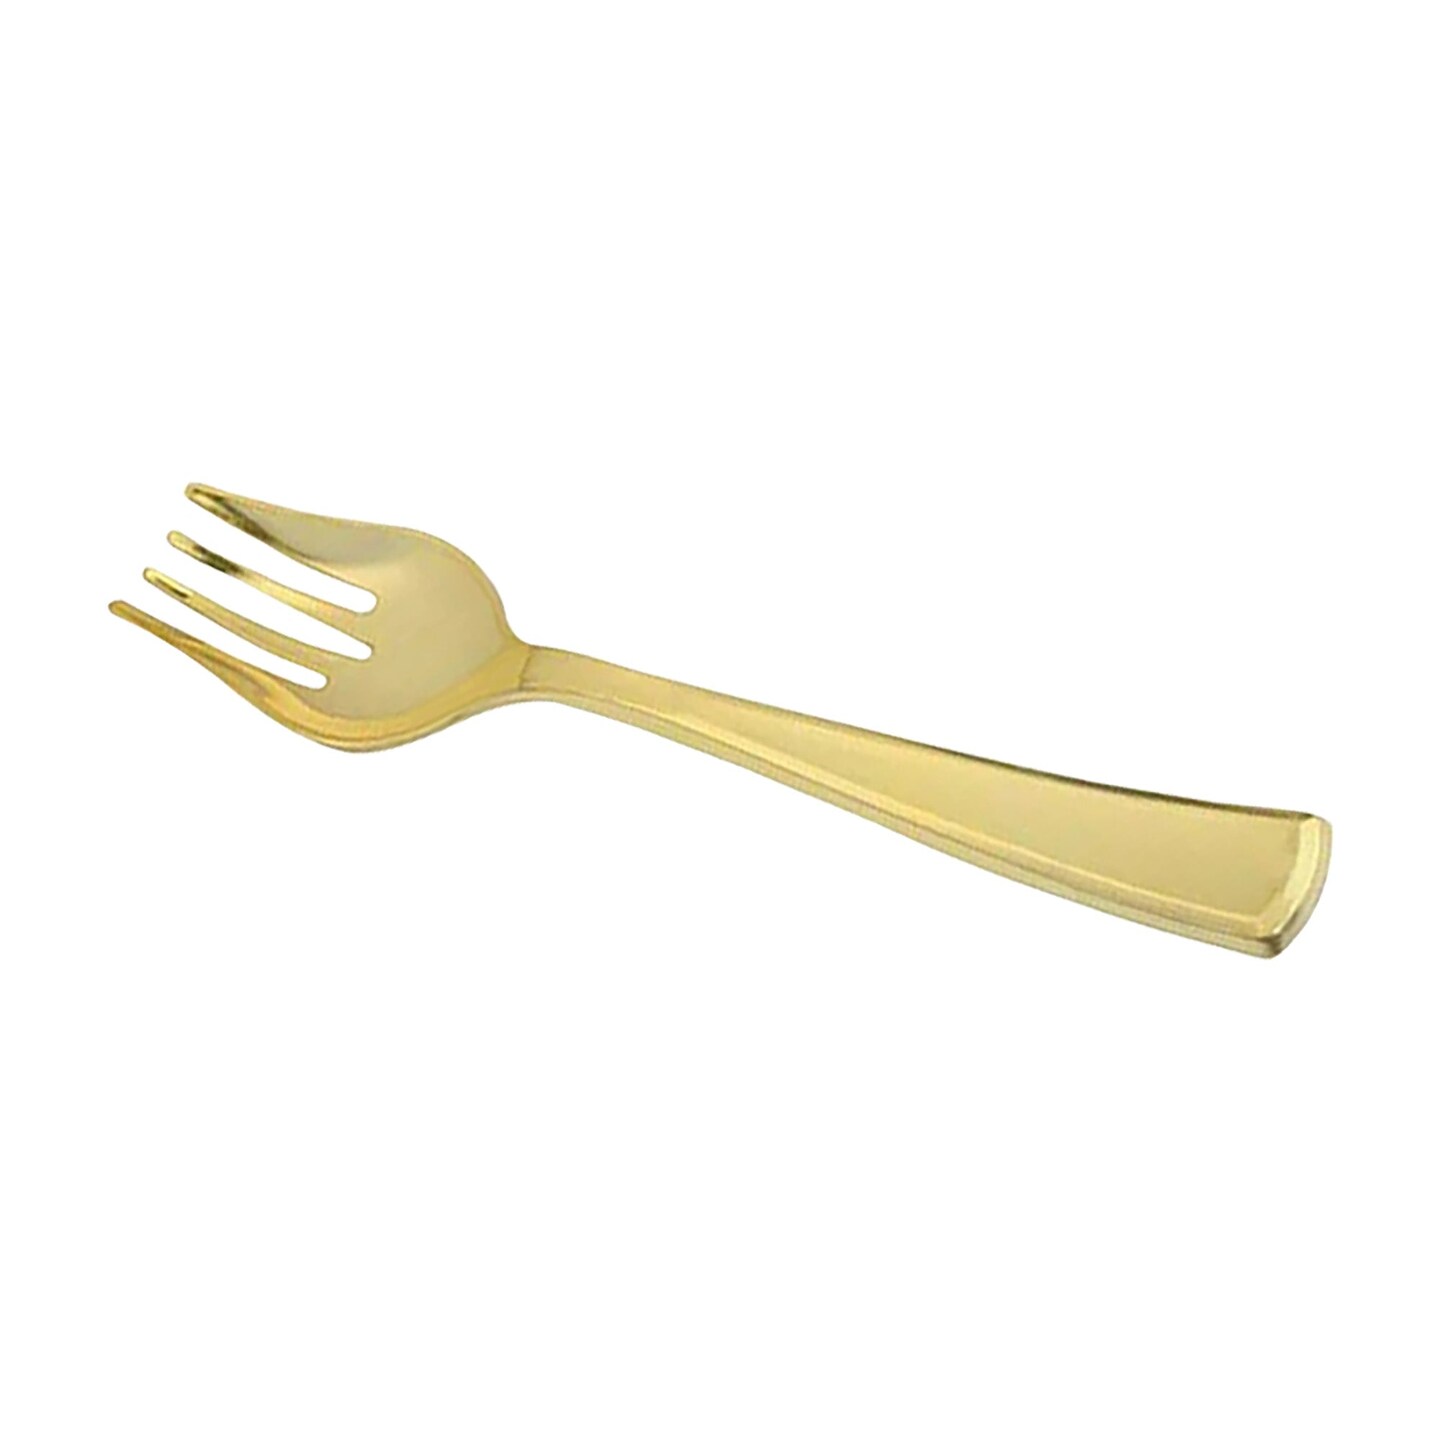 Gold Disposable Plastic Serving Forks (60 Serving Forks)